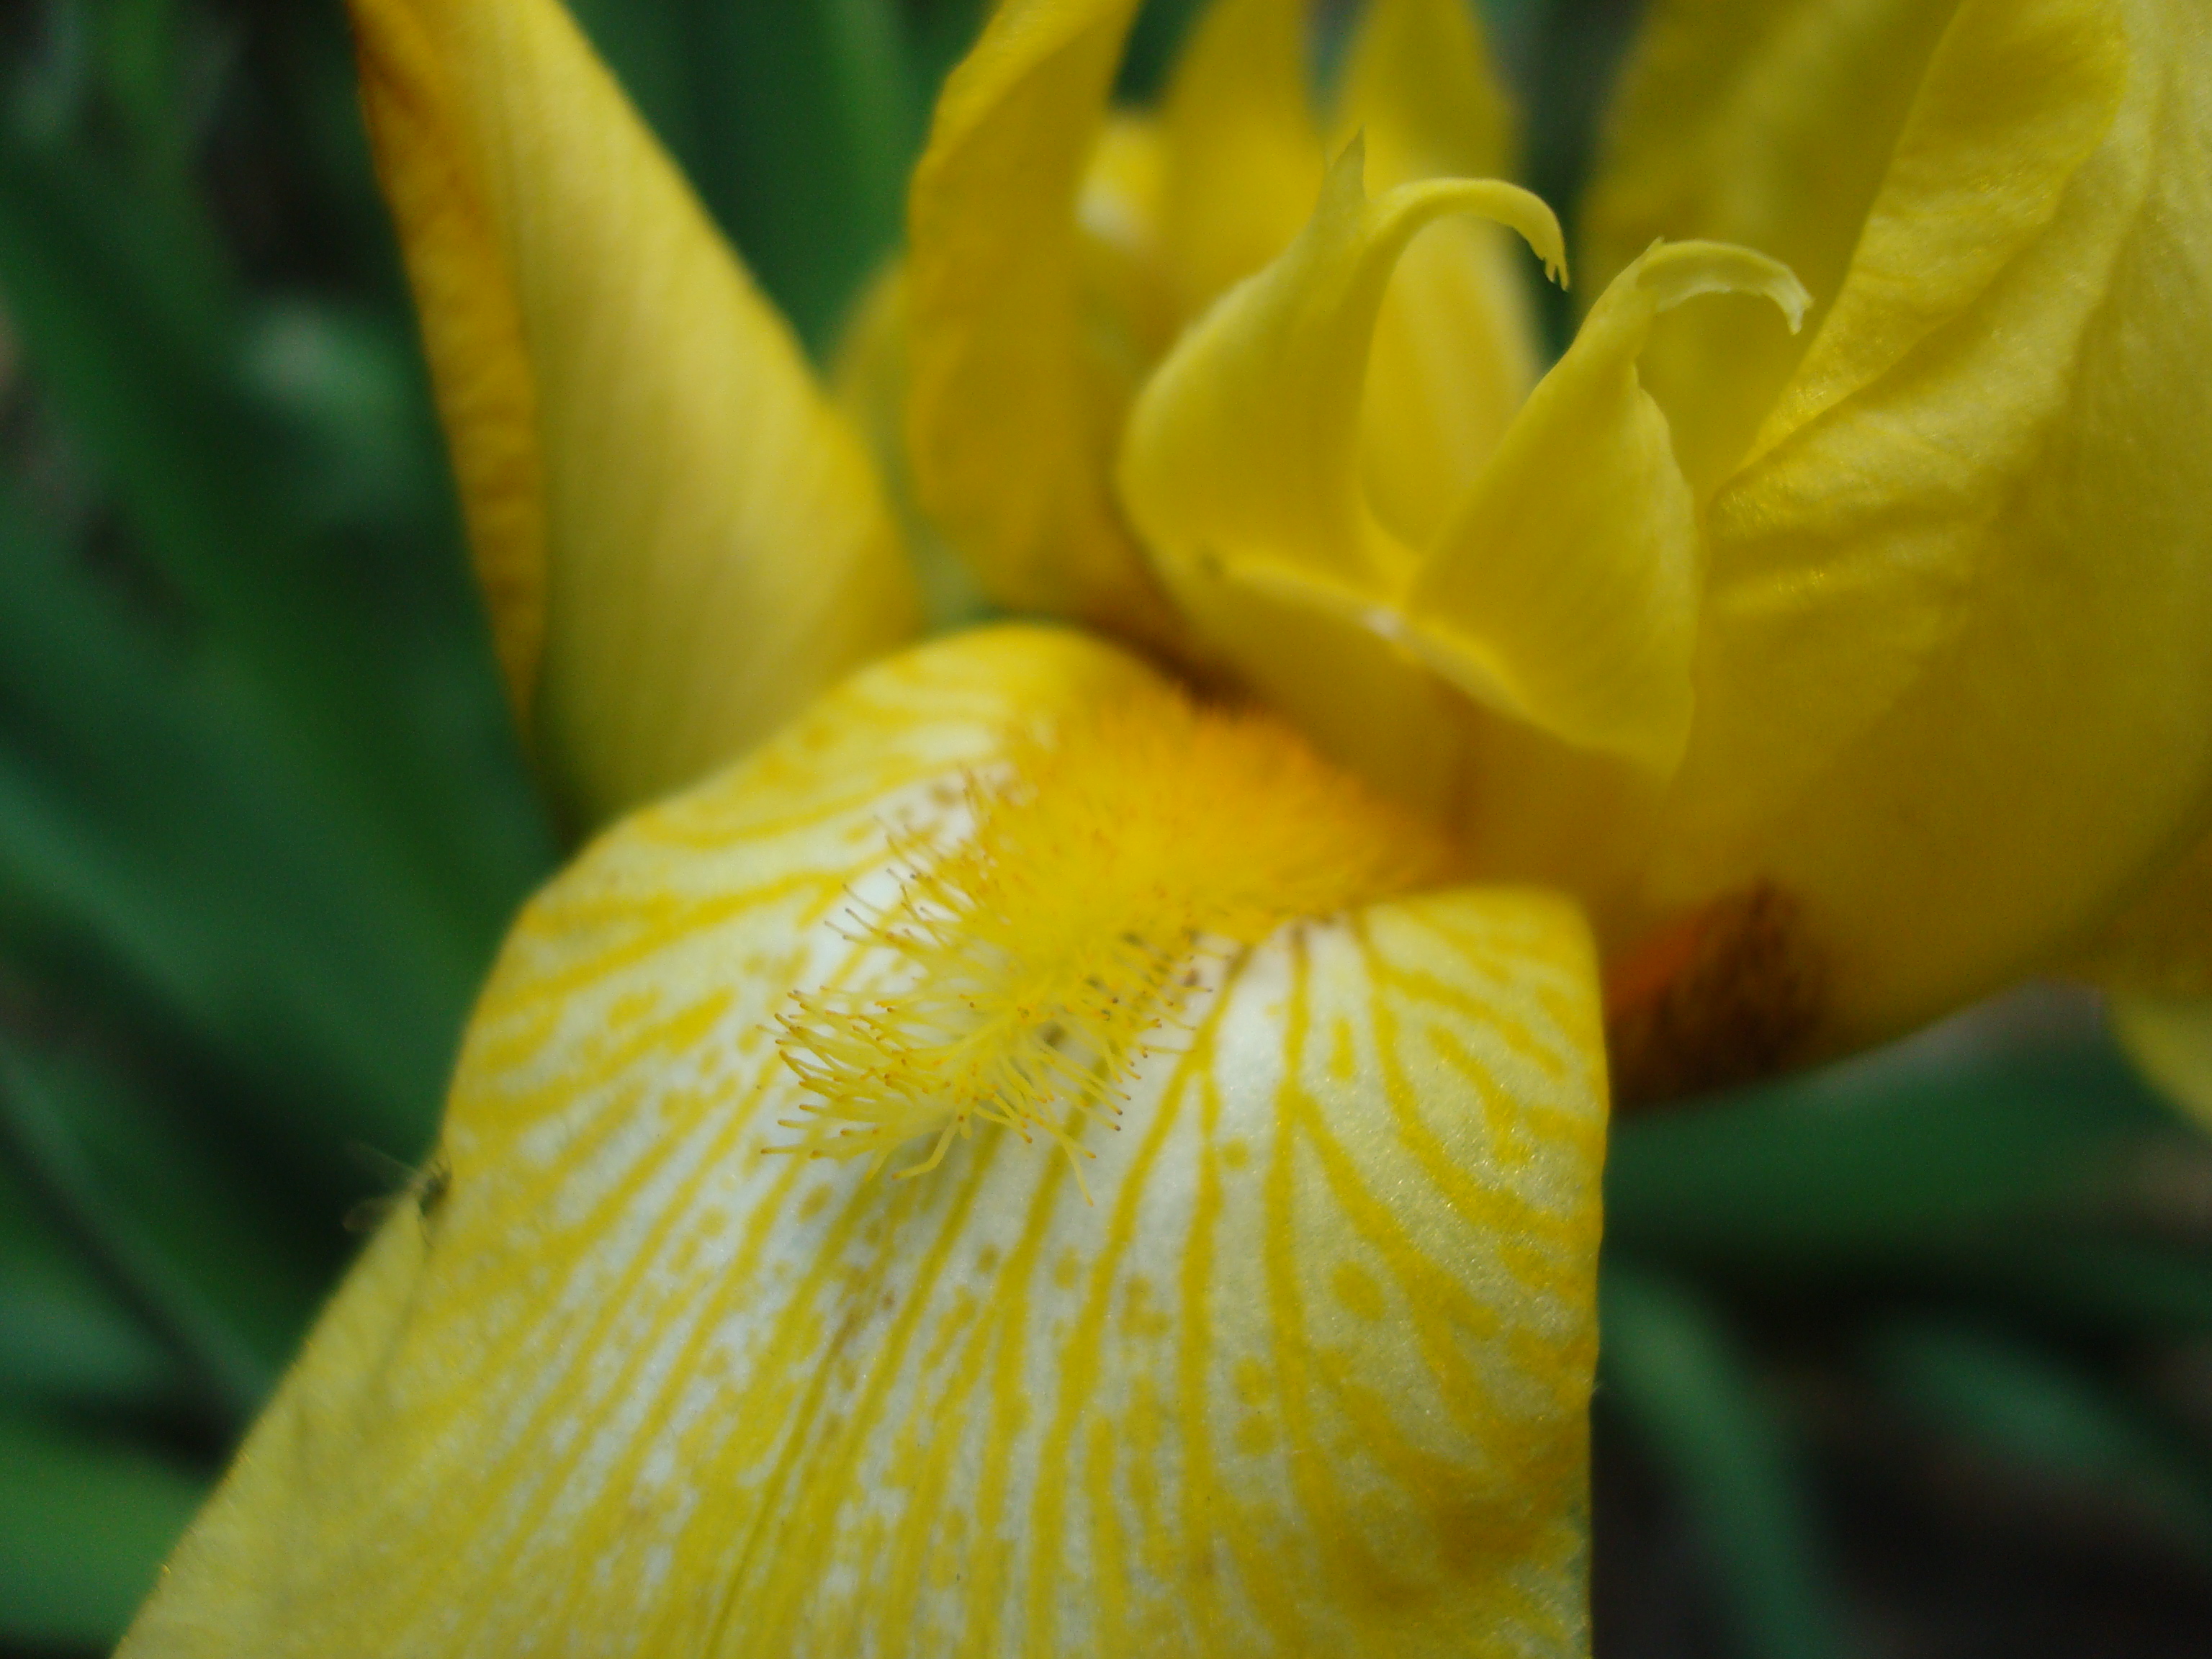 Yellow iris flower macro photo